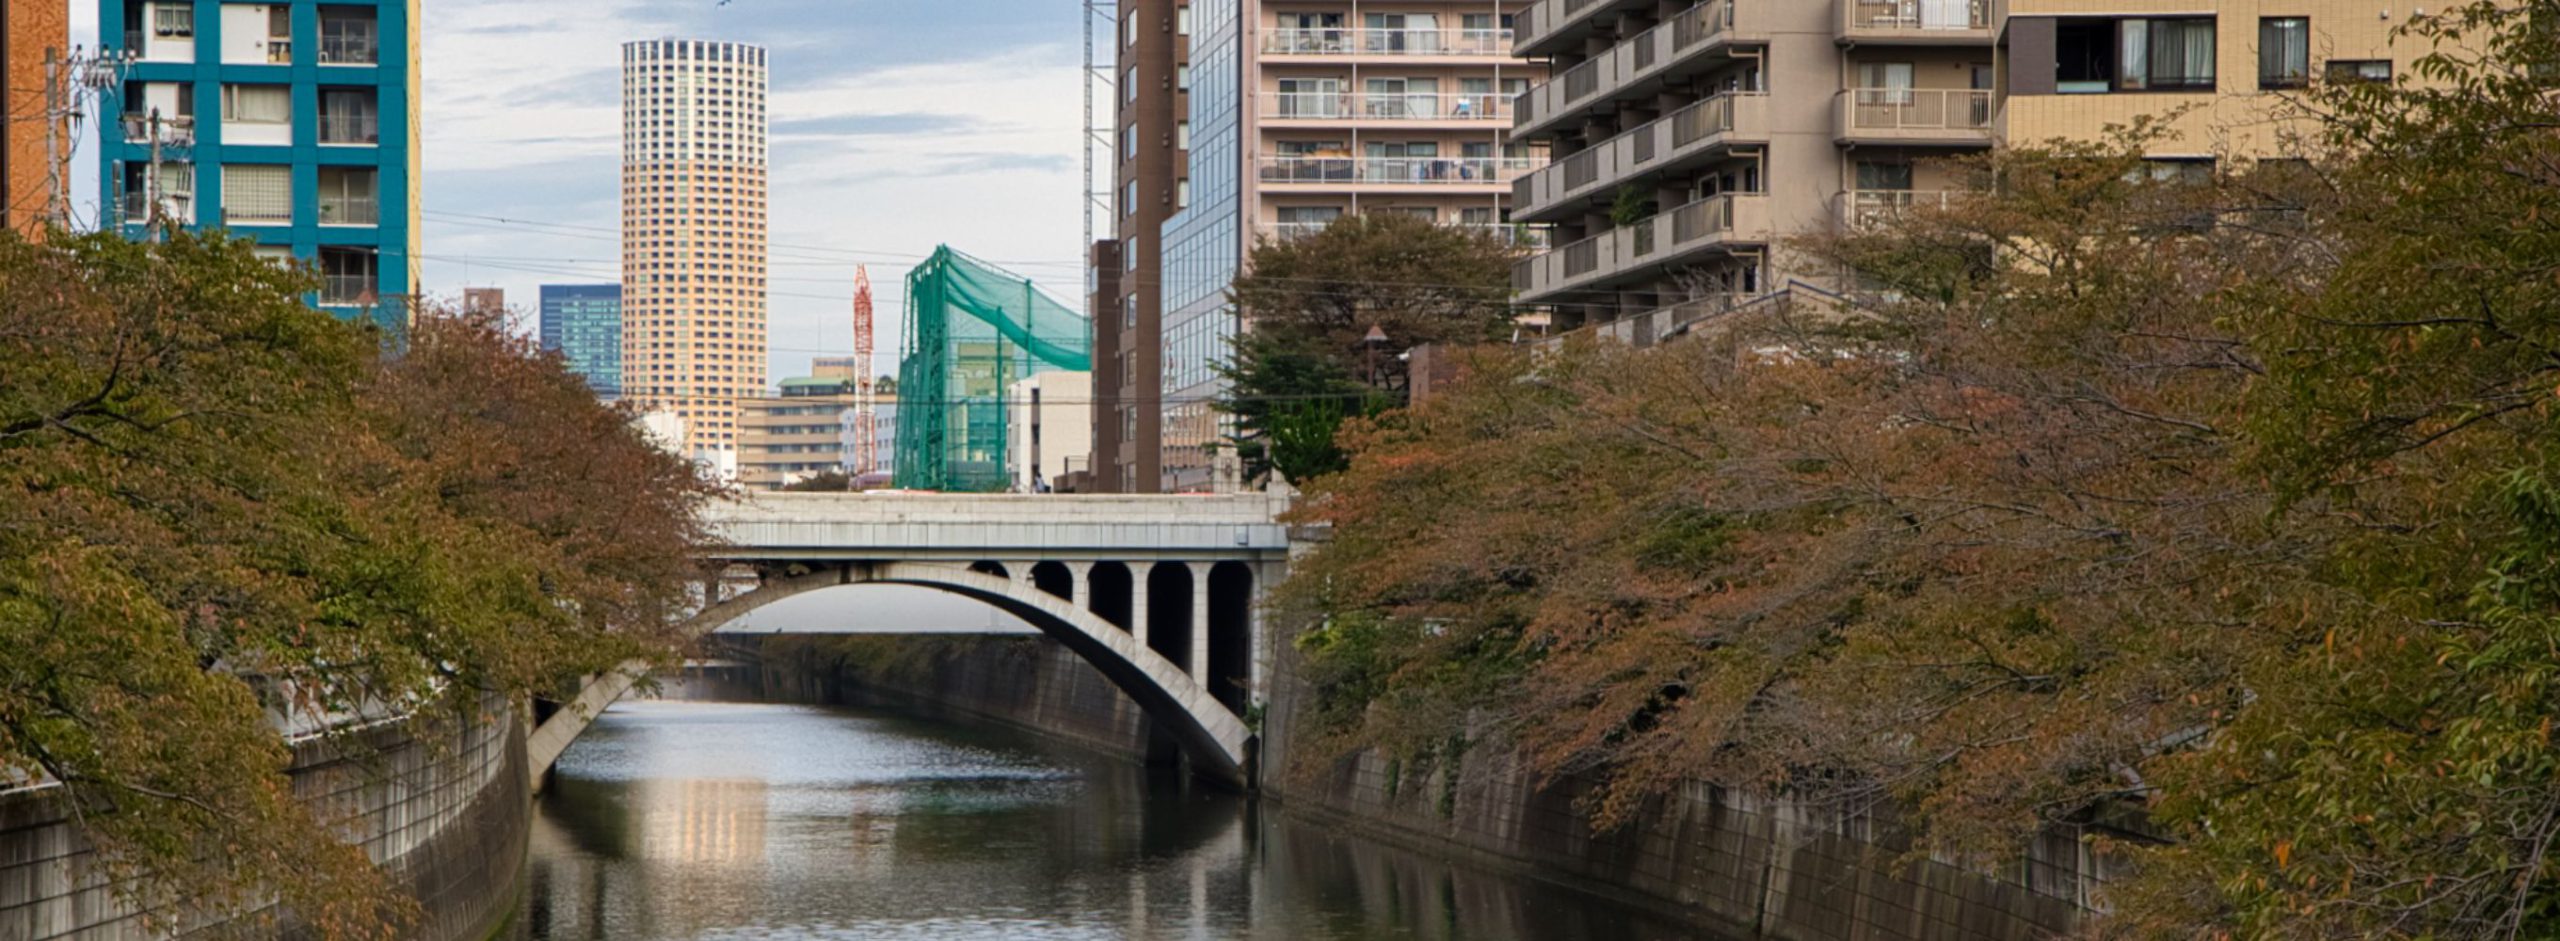 日本の近代史と街の発展に触れながら「上目黒・中目黒・下目黒」を歩く